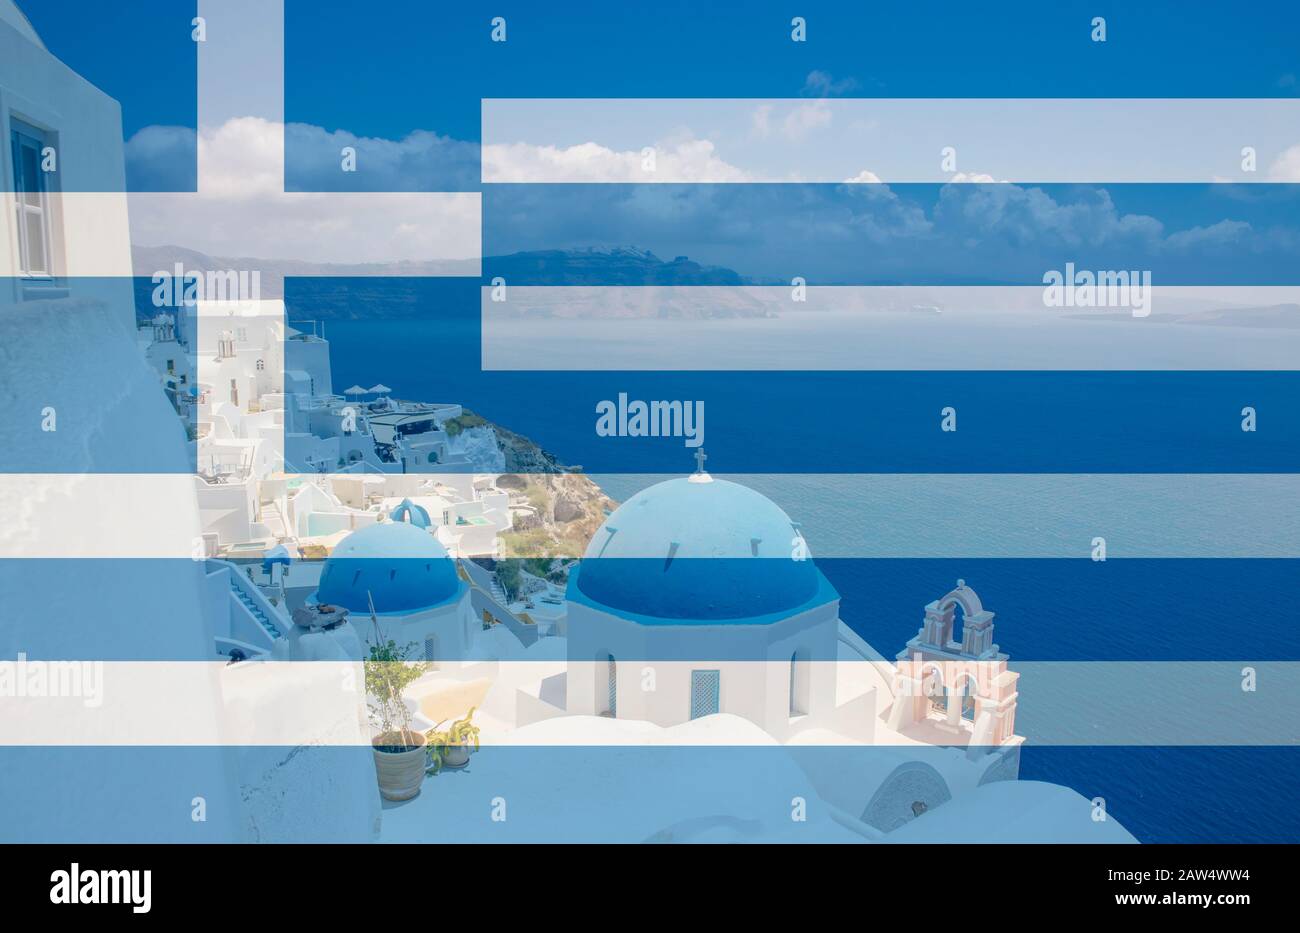 Griechenland als Reiseziel. Blaue Kuppelkirchen auf der Insel Santorini im Dorf Oia, Griechenland. Mit transparenter Flagge Griechenlands. Stockfoto